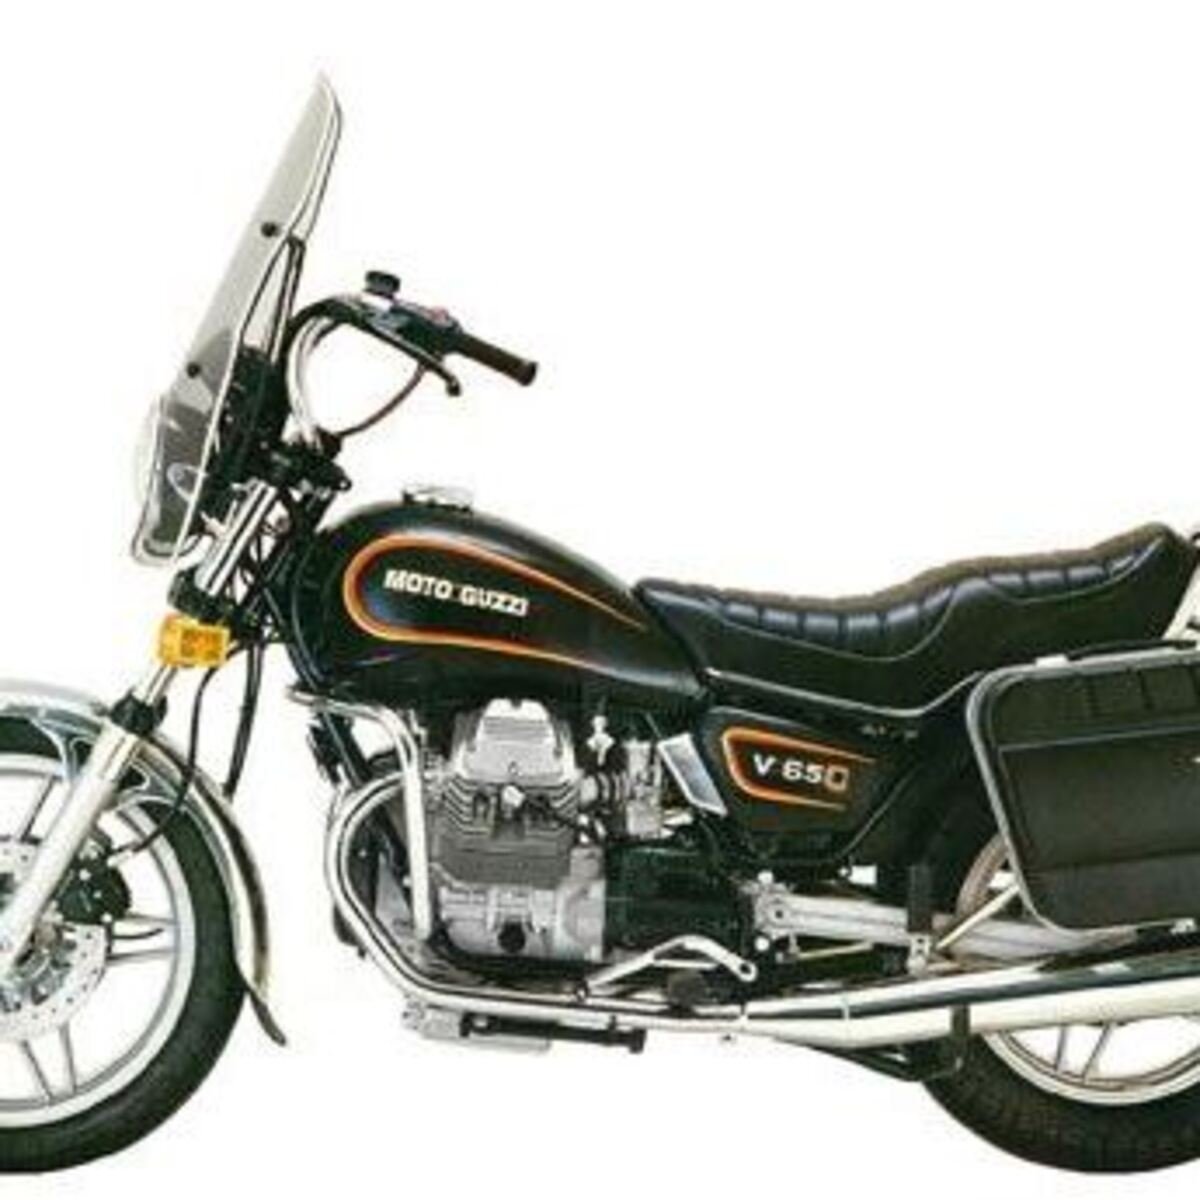 Moto Guzzi V 65 C (1985 - 88)